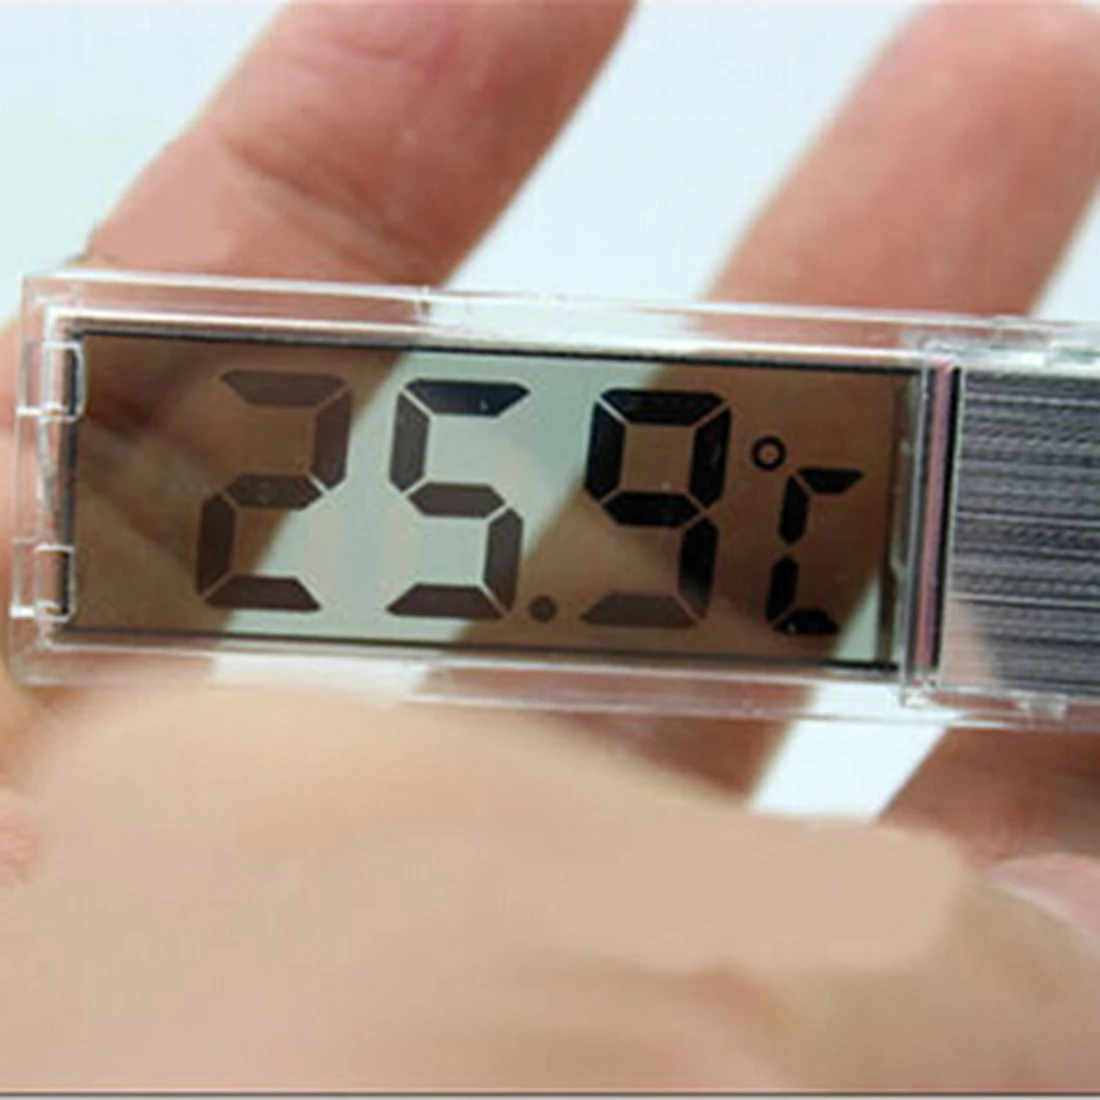 ЖК-дисплей 3D Кристалл цифровой электронный измерение температуры аквариума термометр контроль температуры аксессуары